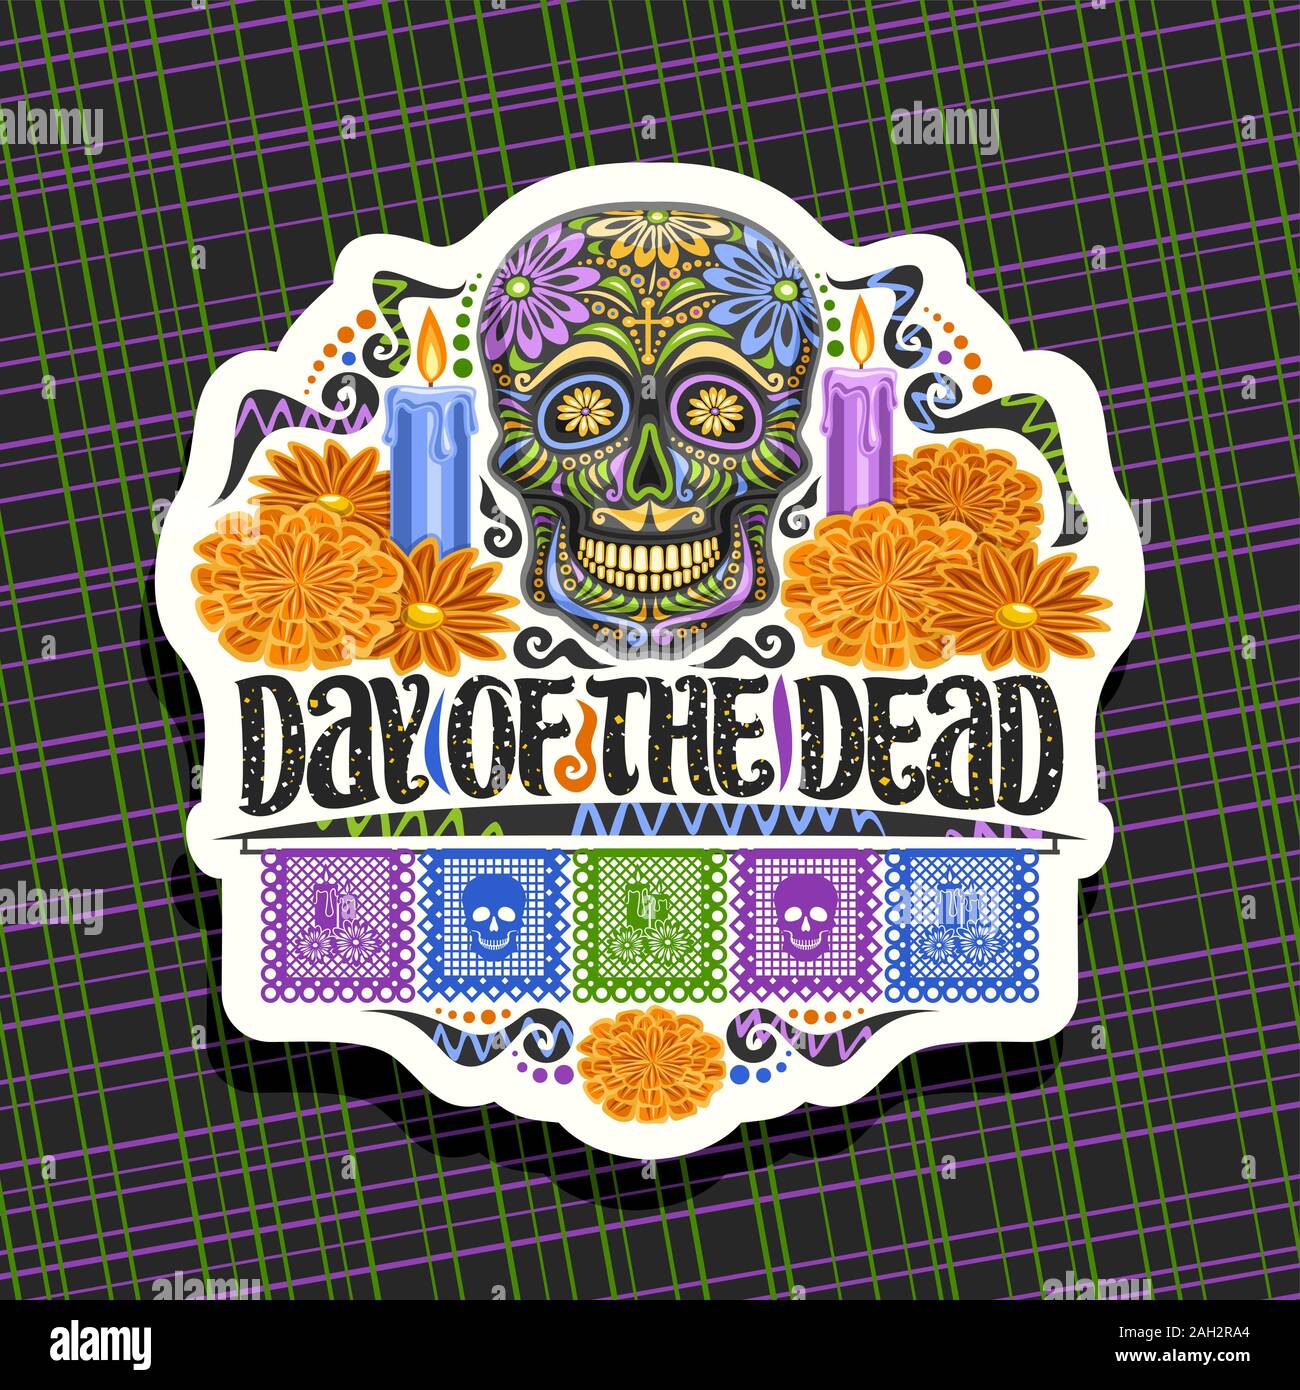 Vektor Logo zum Tag der Toten, weiß dekorative Namensschild mit Abbildung: schwarz scary Schädel, brennende Kerzen, orange Blumen, bunten Gruß fla Stock Vektor